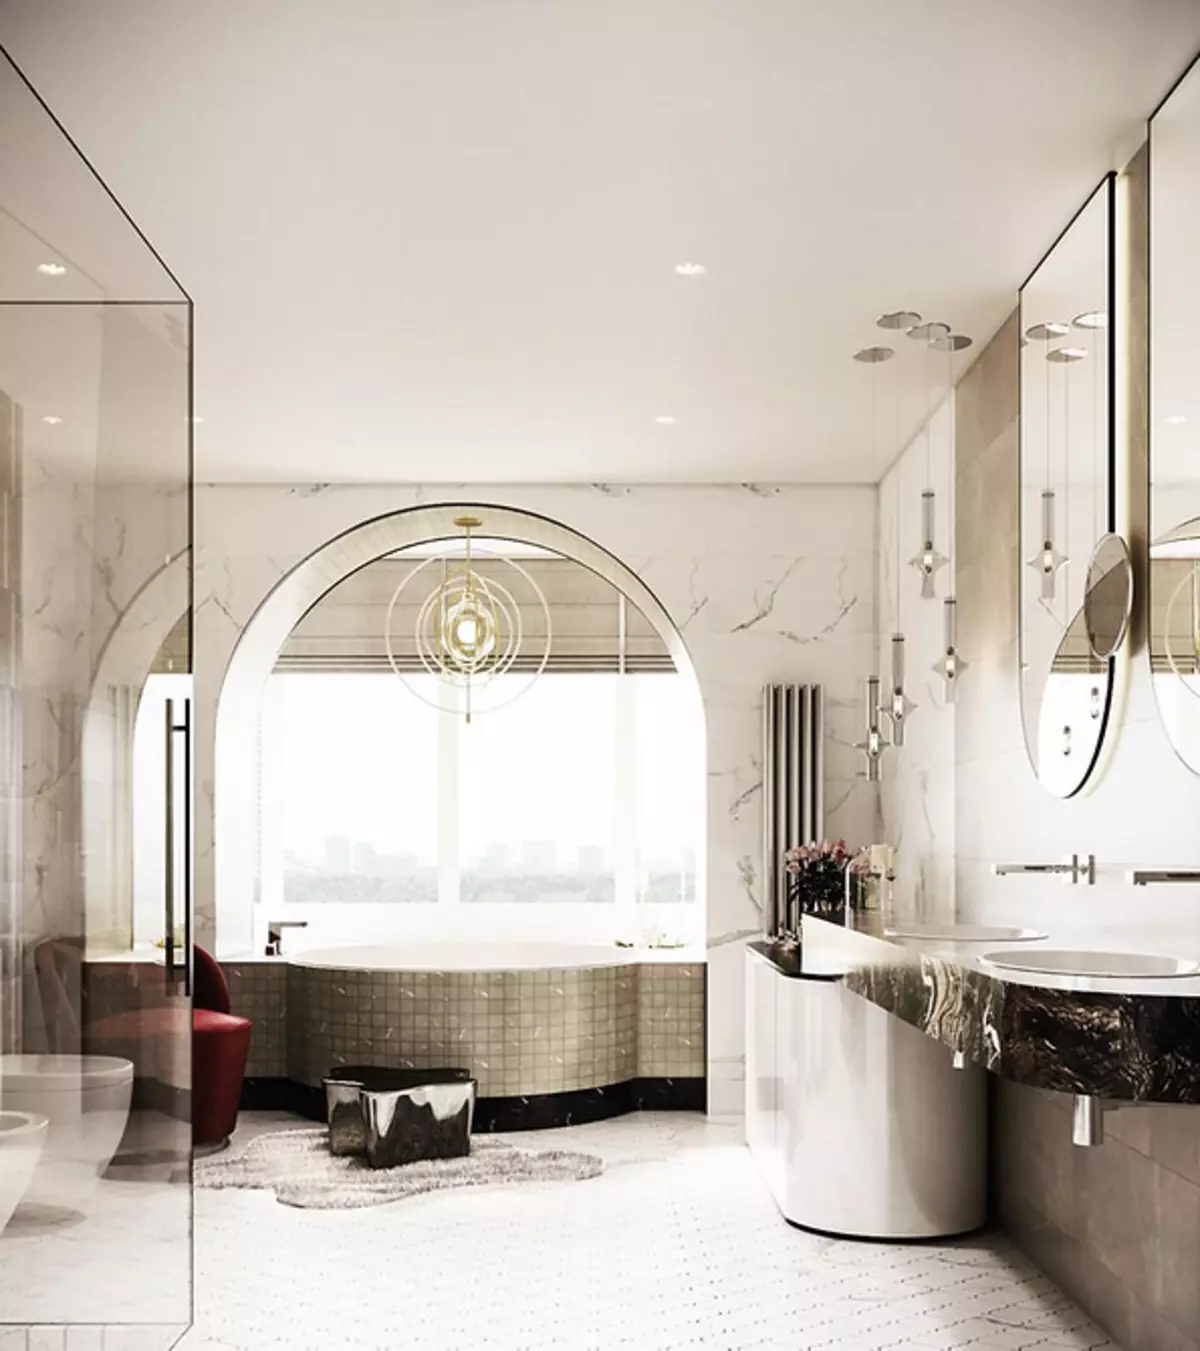 नुहाउने र स्नान को साथ बाथरूम डिजाइन: counteres 75 फोटोहरू - IVD.RU 4108_59